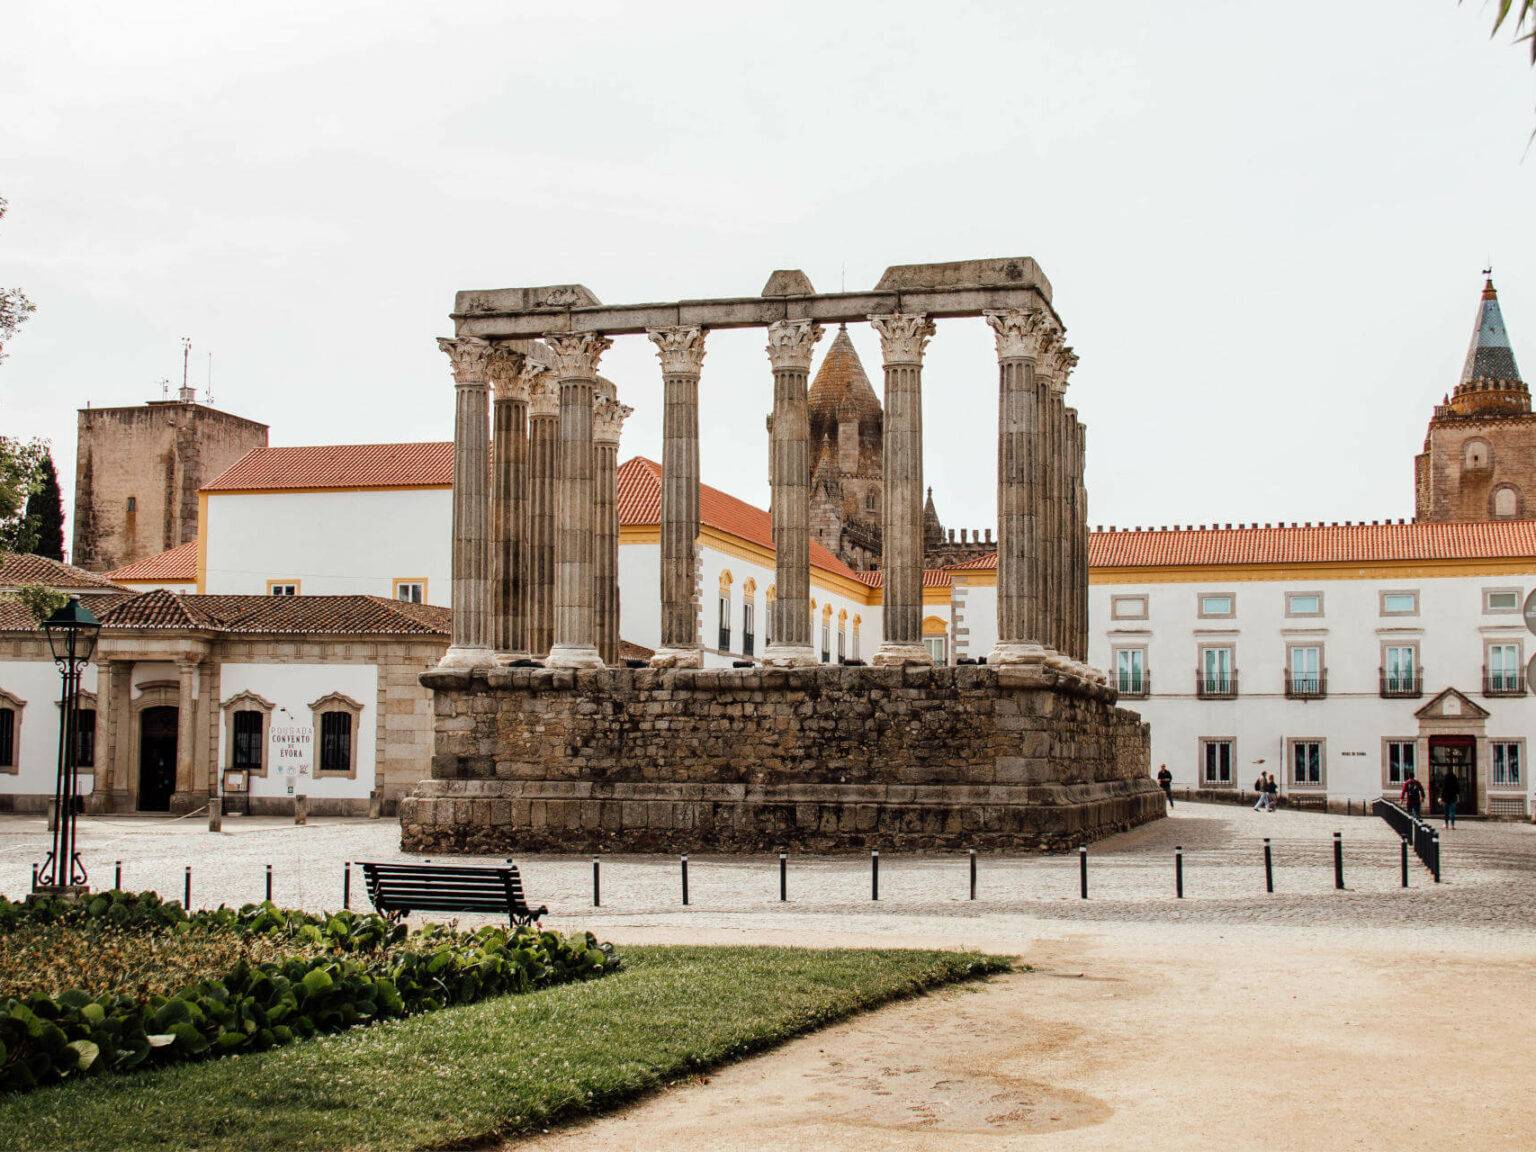 Ein beeindruckender antiker Tempel in Mitten eines Platzes im Örtchen Evora im Alentejo